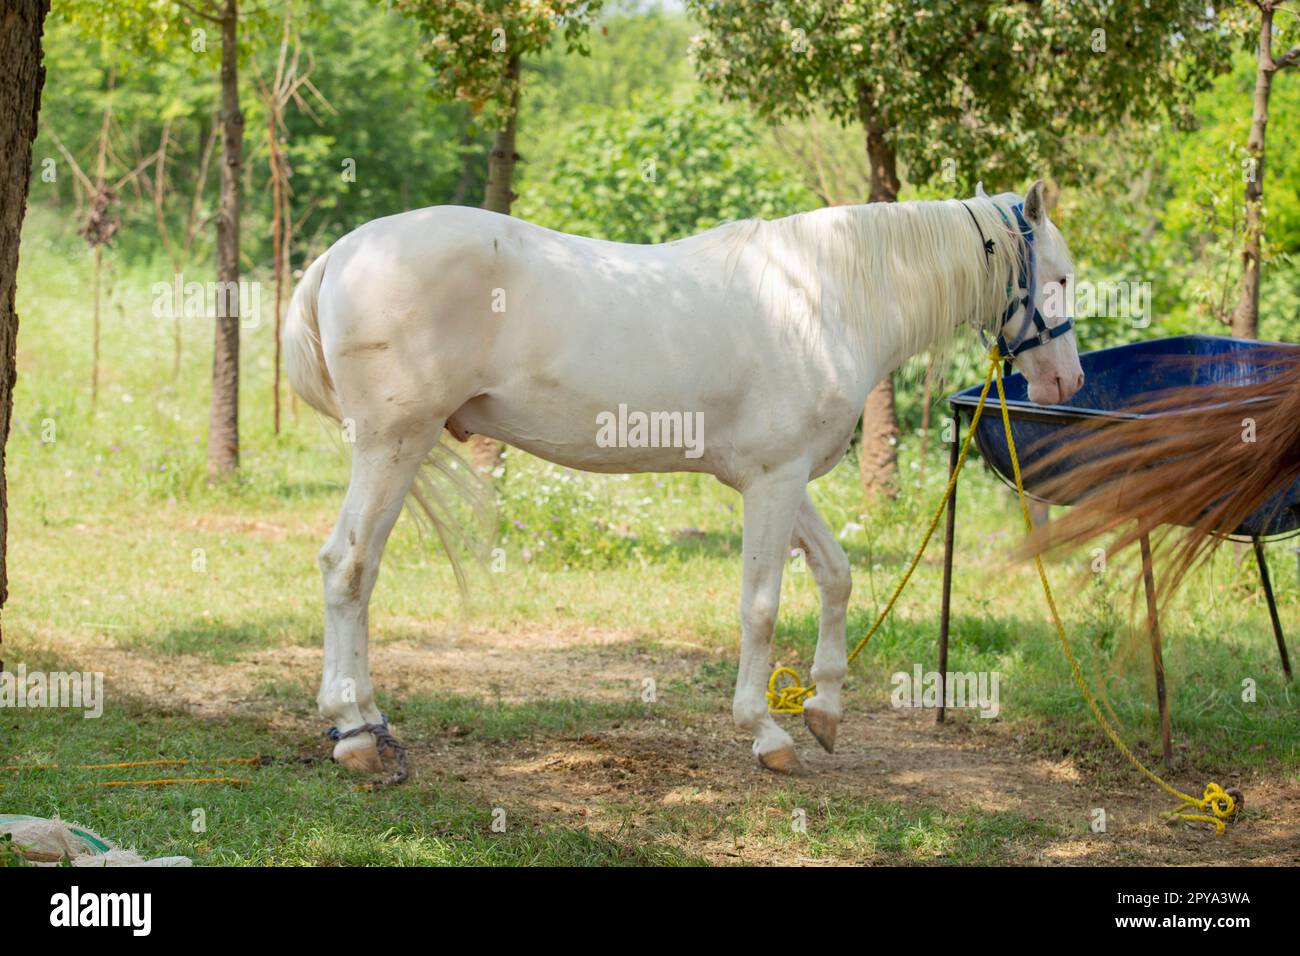 Pferdekonformationsaufnahme mit weißem Körper und allen vier Beinen sichtbares Pferd, das im Frühlingssommer auf grünem Gras steht. Städtisch Stockfoto